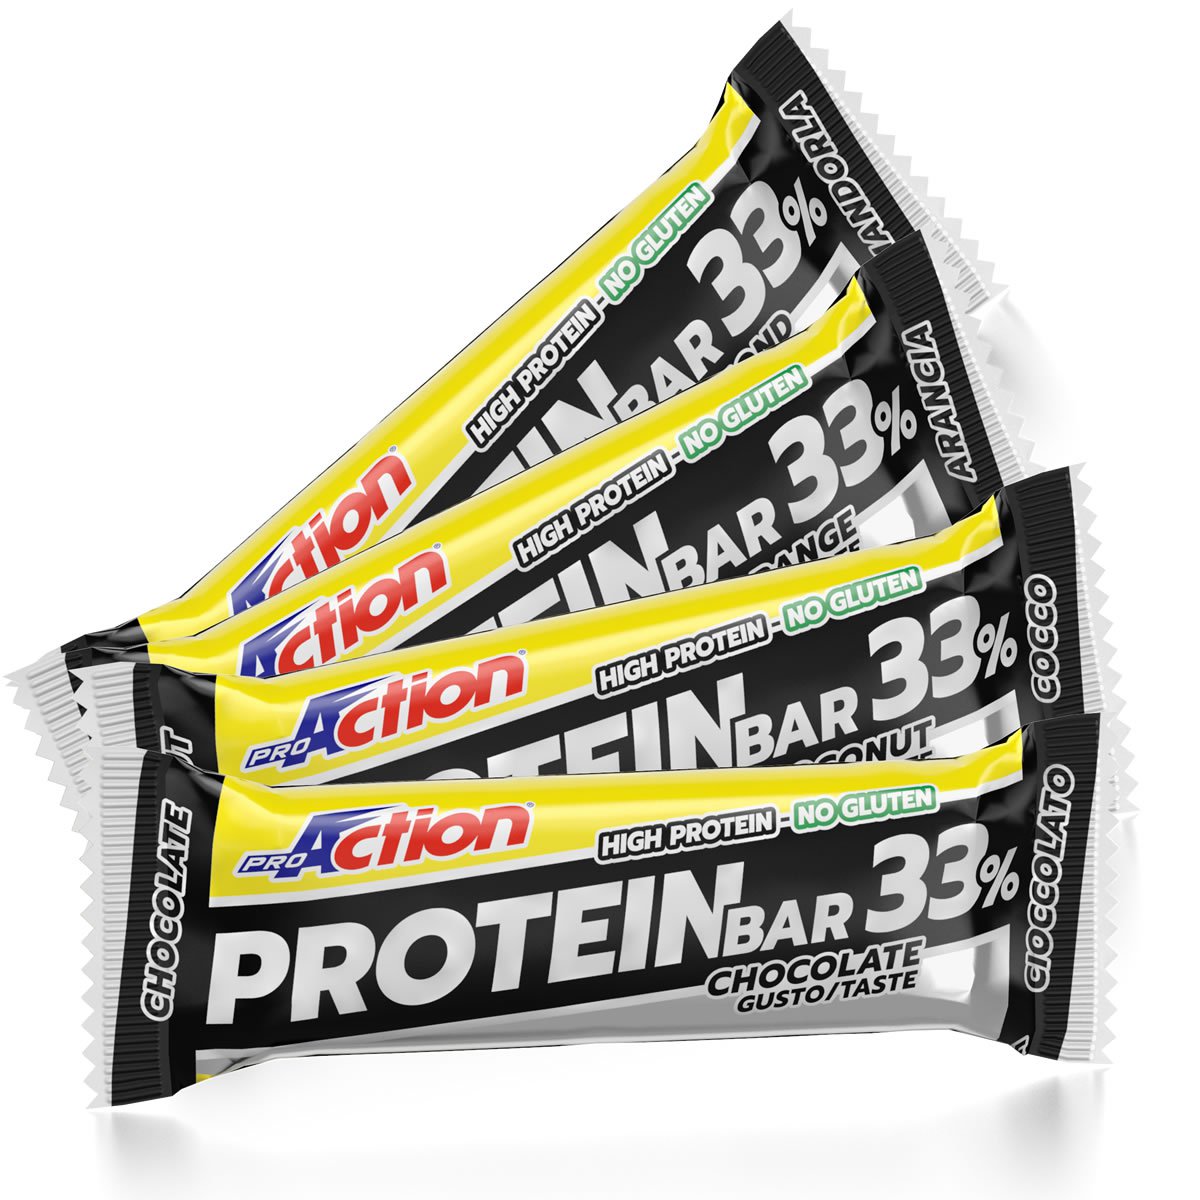 Protein Bar 33%